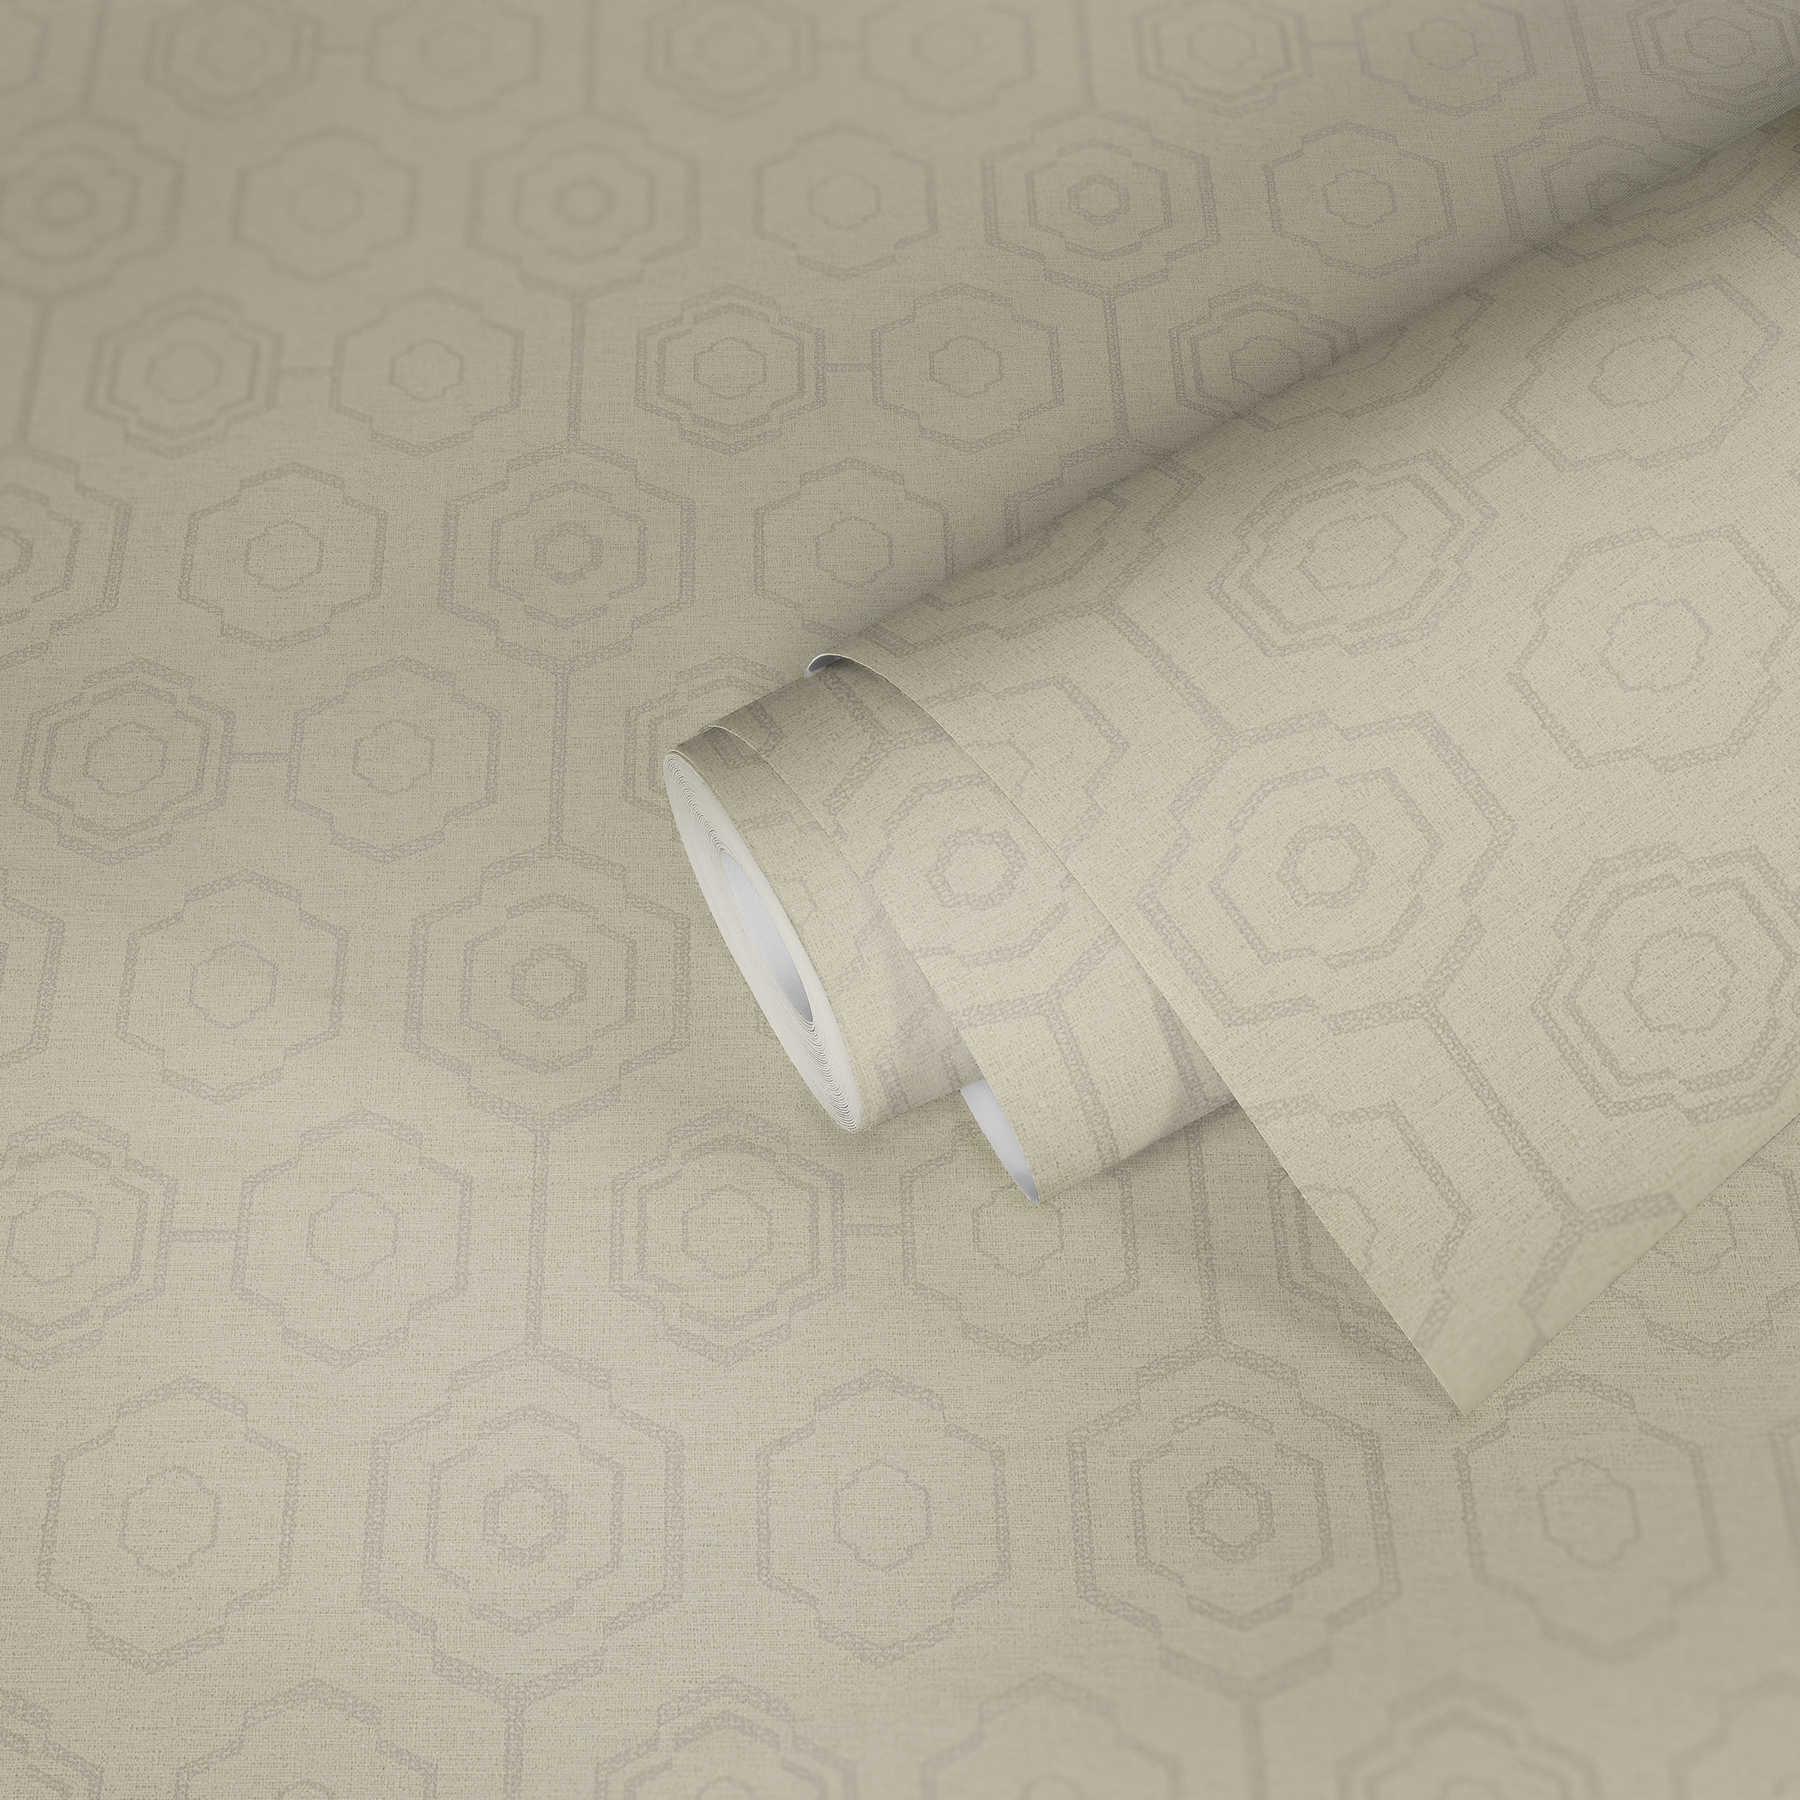             Carta da parati in tessuto con disegno geometrico ed effetto lucido - crema, grigio, beige
        